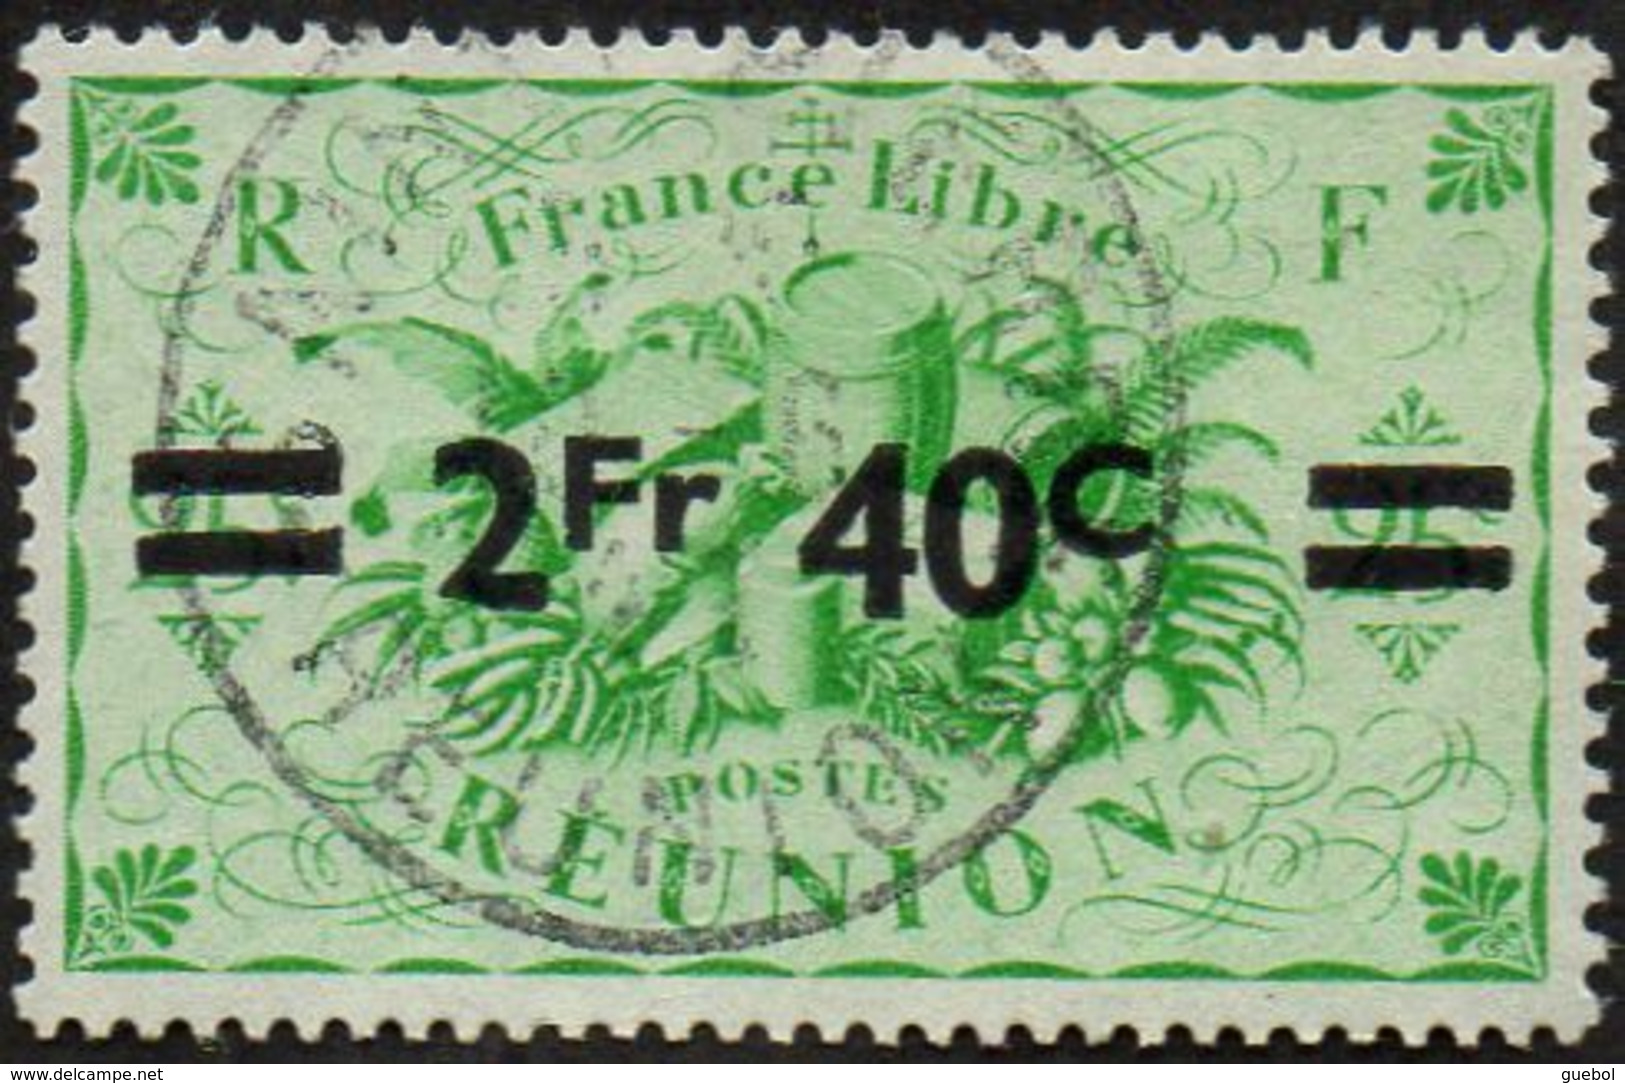 Réunion Obl. N° 256 - Détail De La Série De LONDRES Surchargé En 1945 - Productions - 2f40 Sur 25cts C Vert - Usati